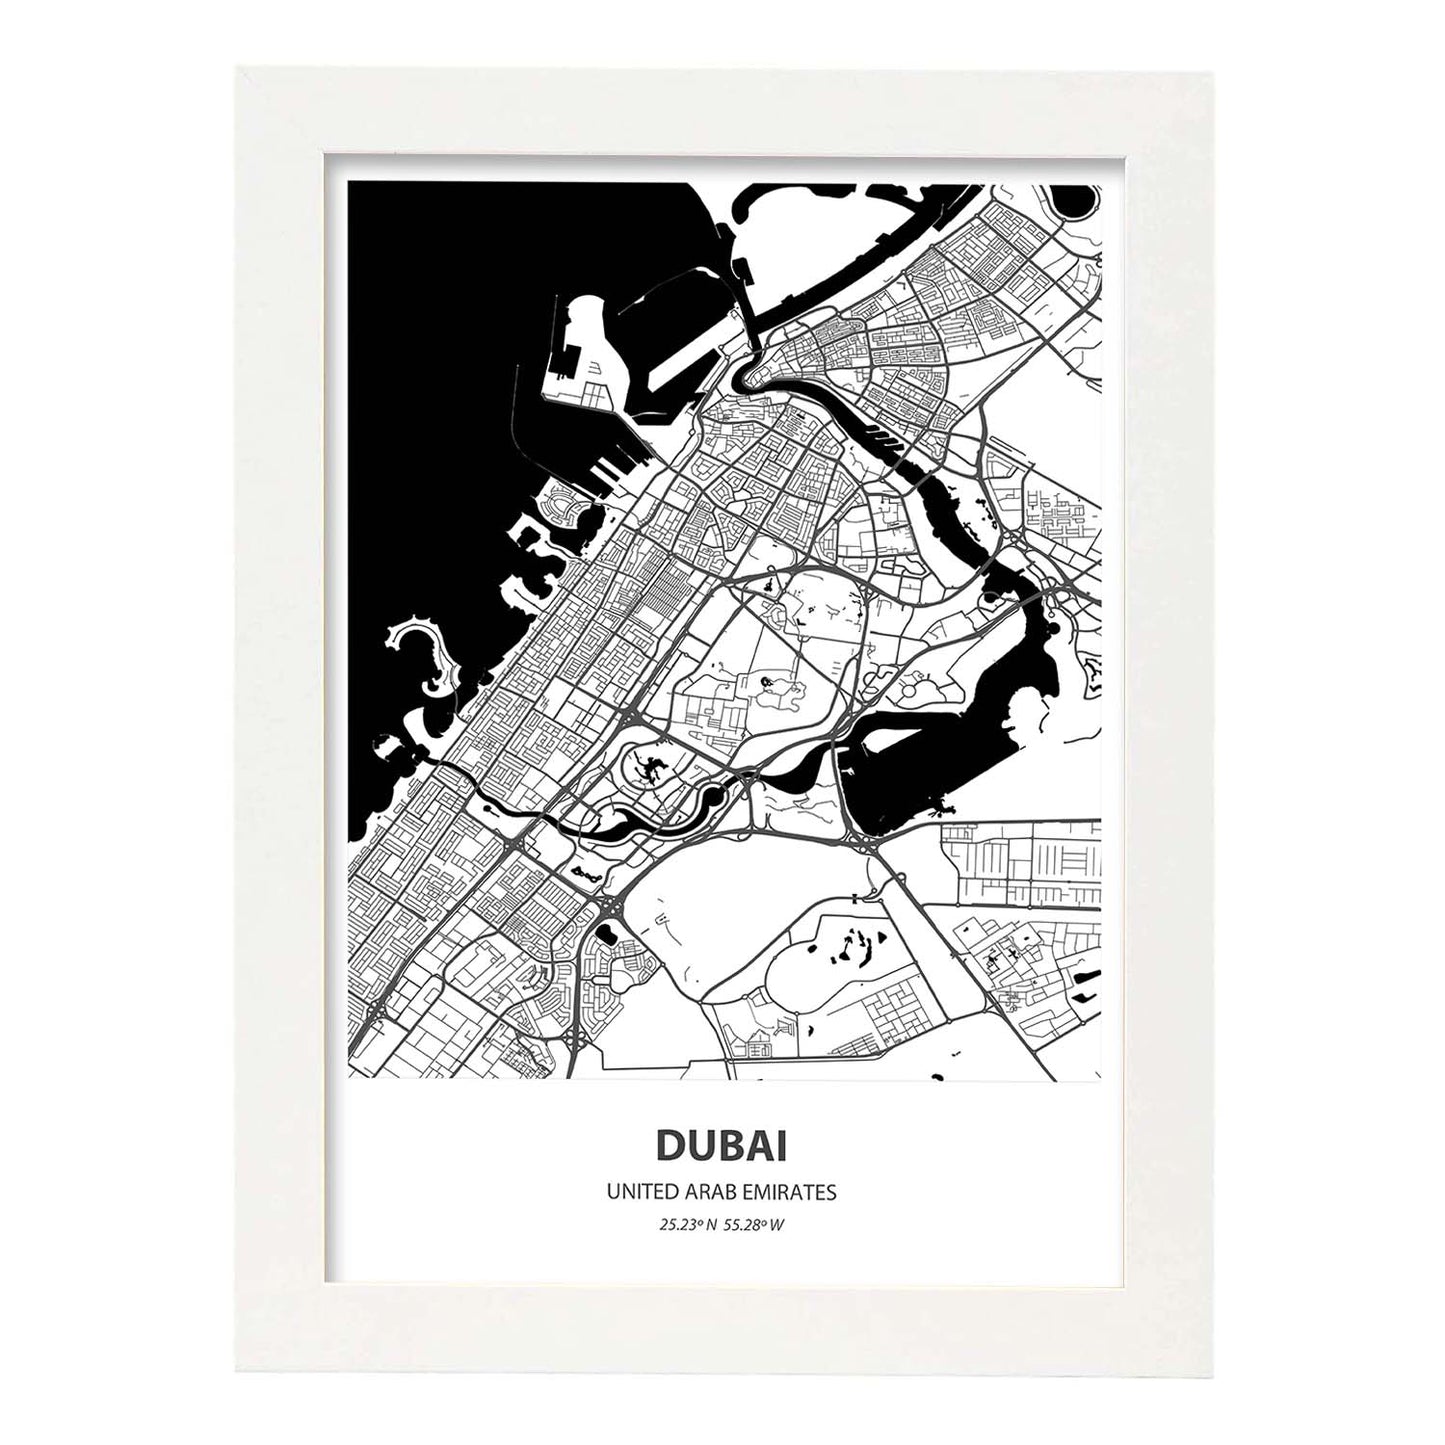 Poster con mapa de Dubai - Emiratos Arabes Unidos. Láminas de ciudades de Oriente Medio con mares y ríos en color negro.-Artwork-Nacnic-A3-Marco Blanco-Nacnic Estudio SL